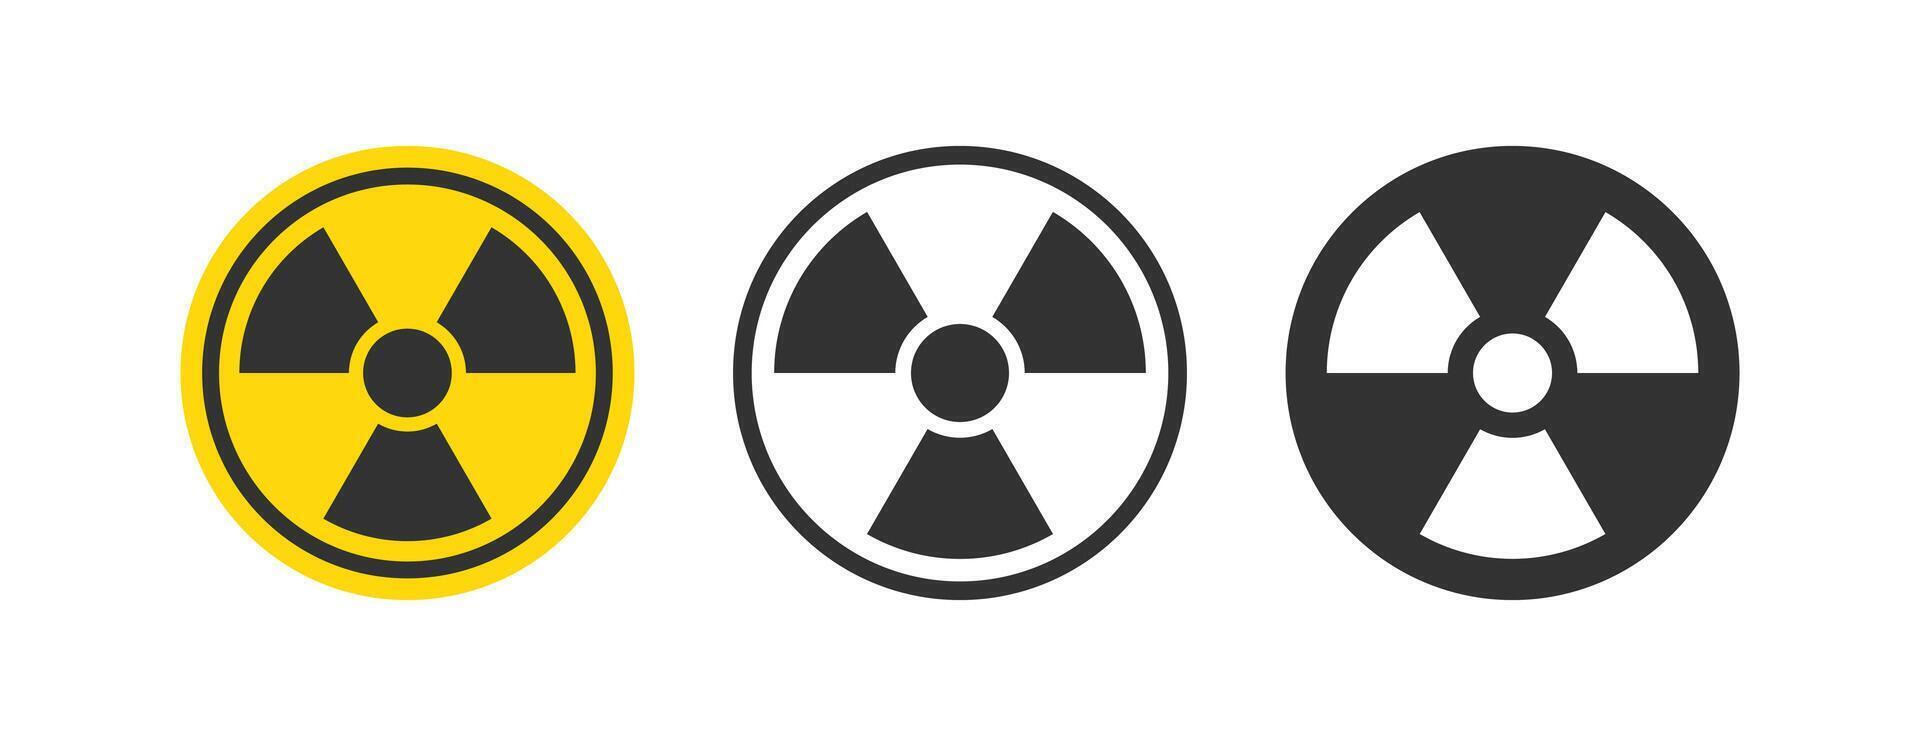 Strahlung unterzeichnen. nuklear Gefahr Symbol. radioaktiv Warnung. giftig Achtung. Vektor Illustration.